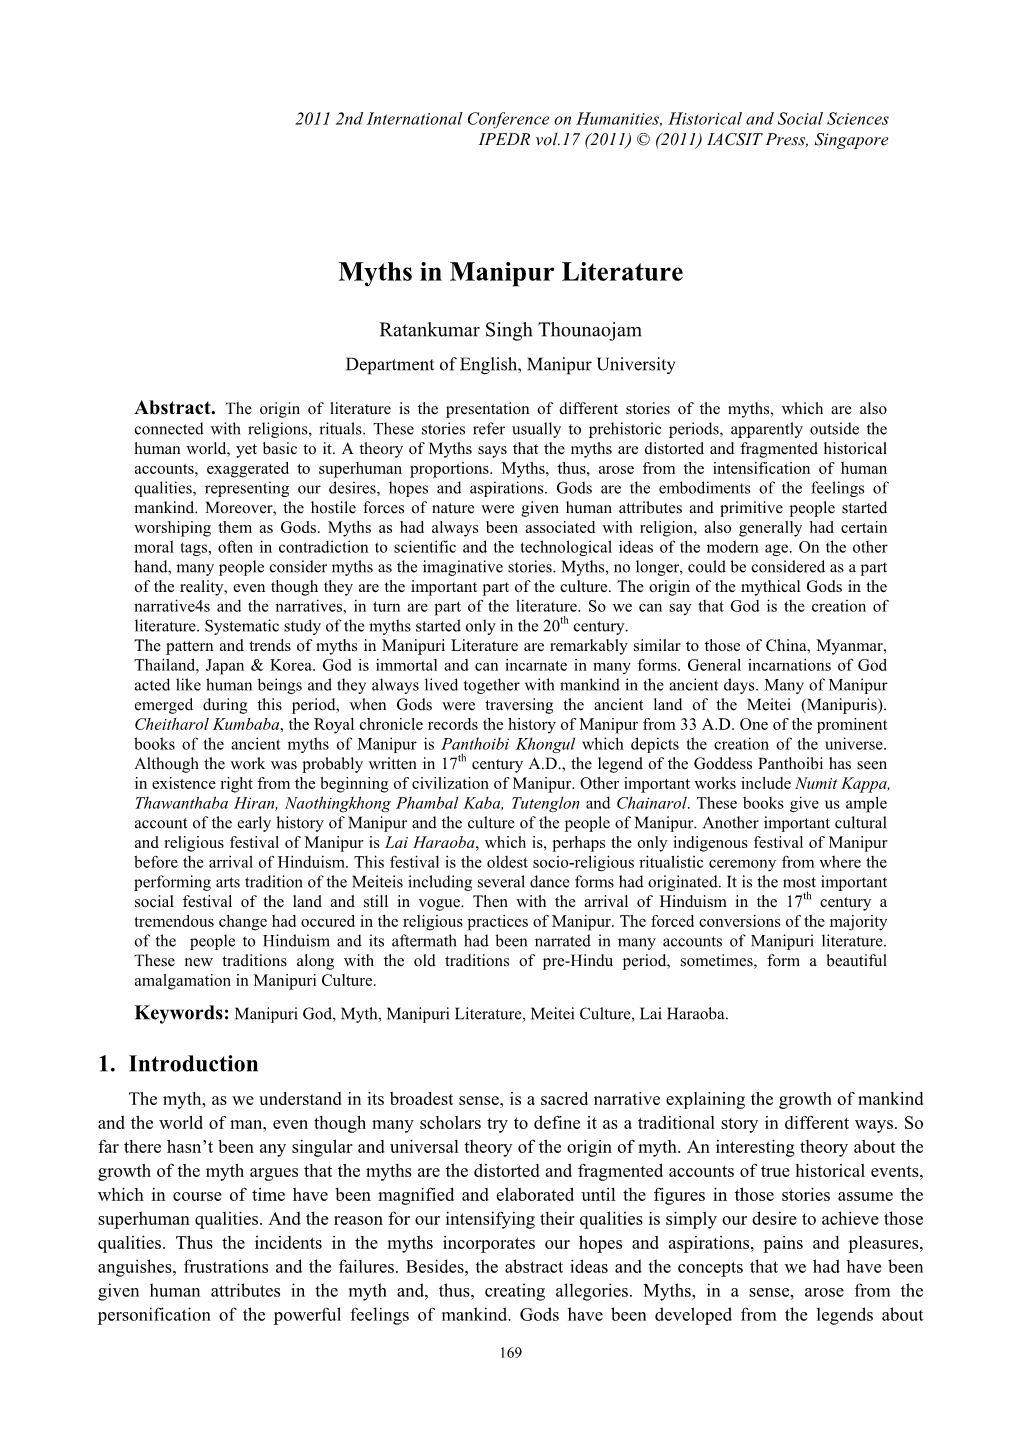 Myths in Manipur Literature